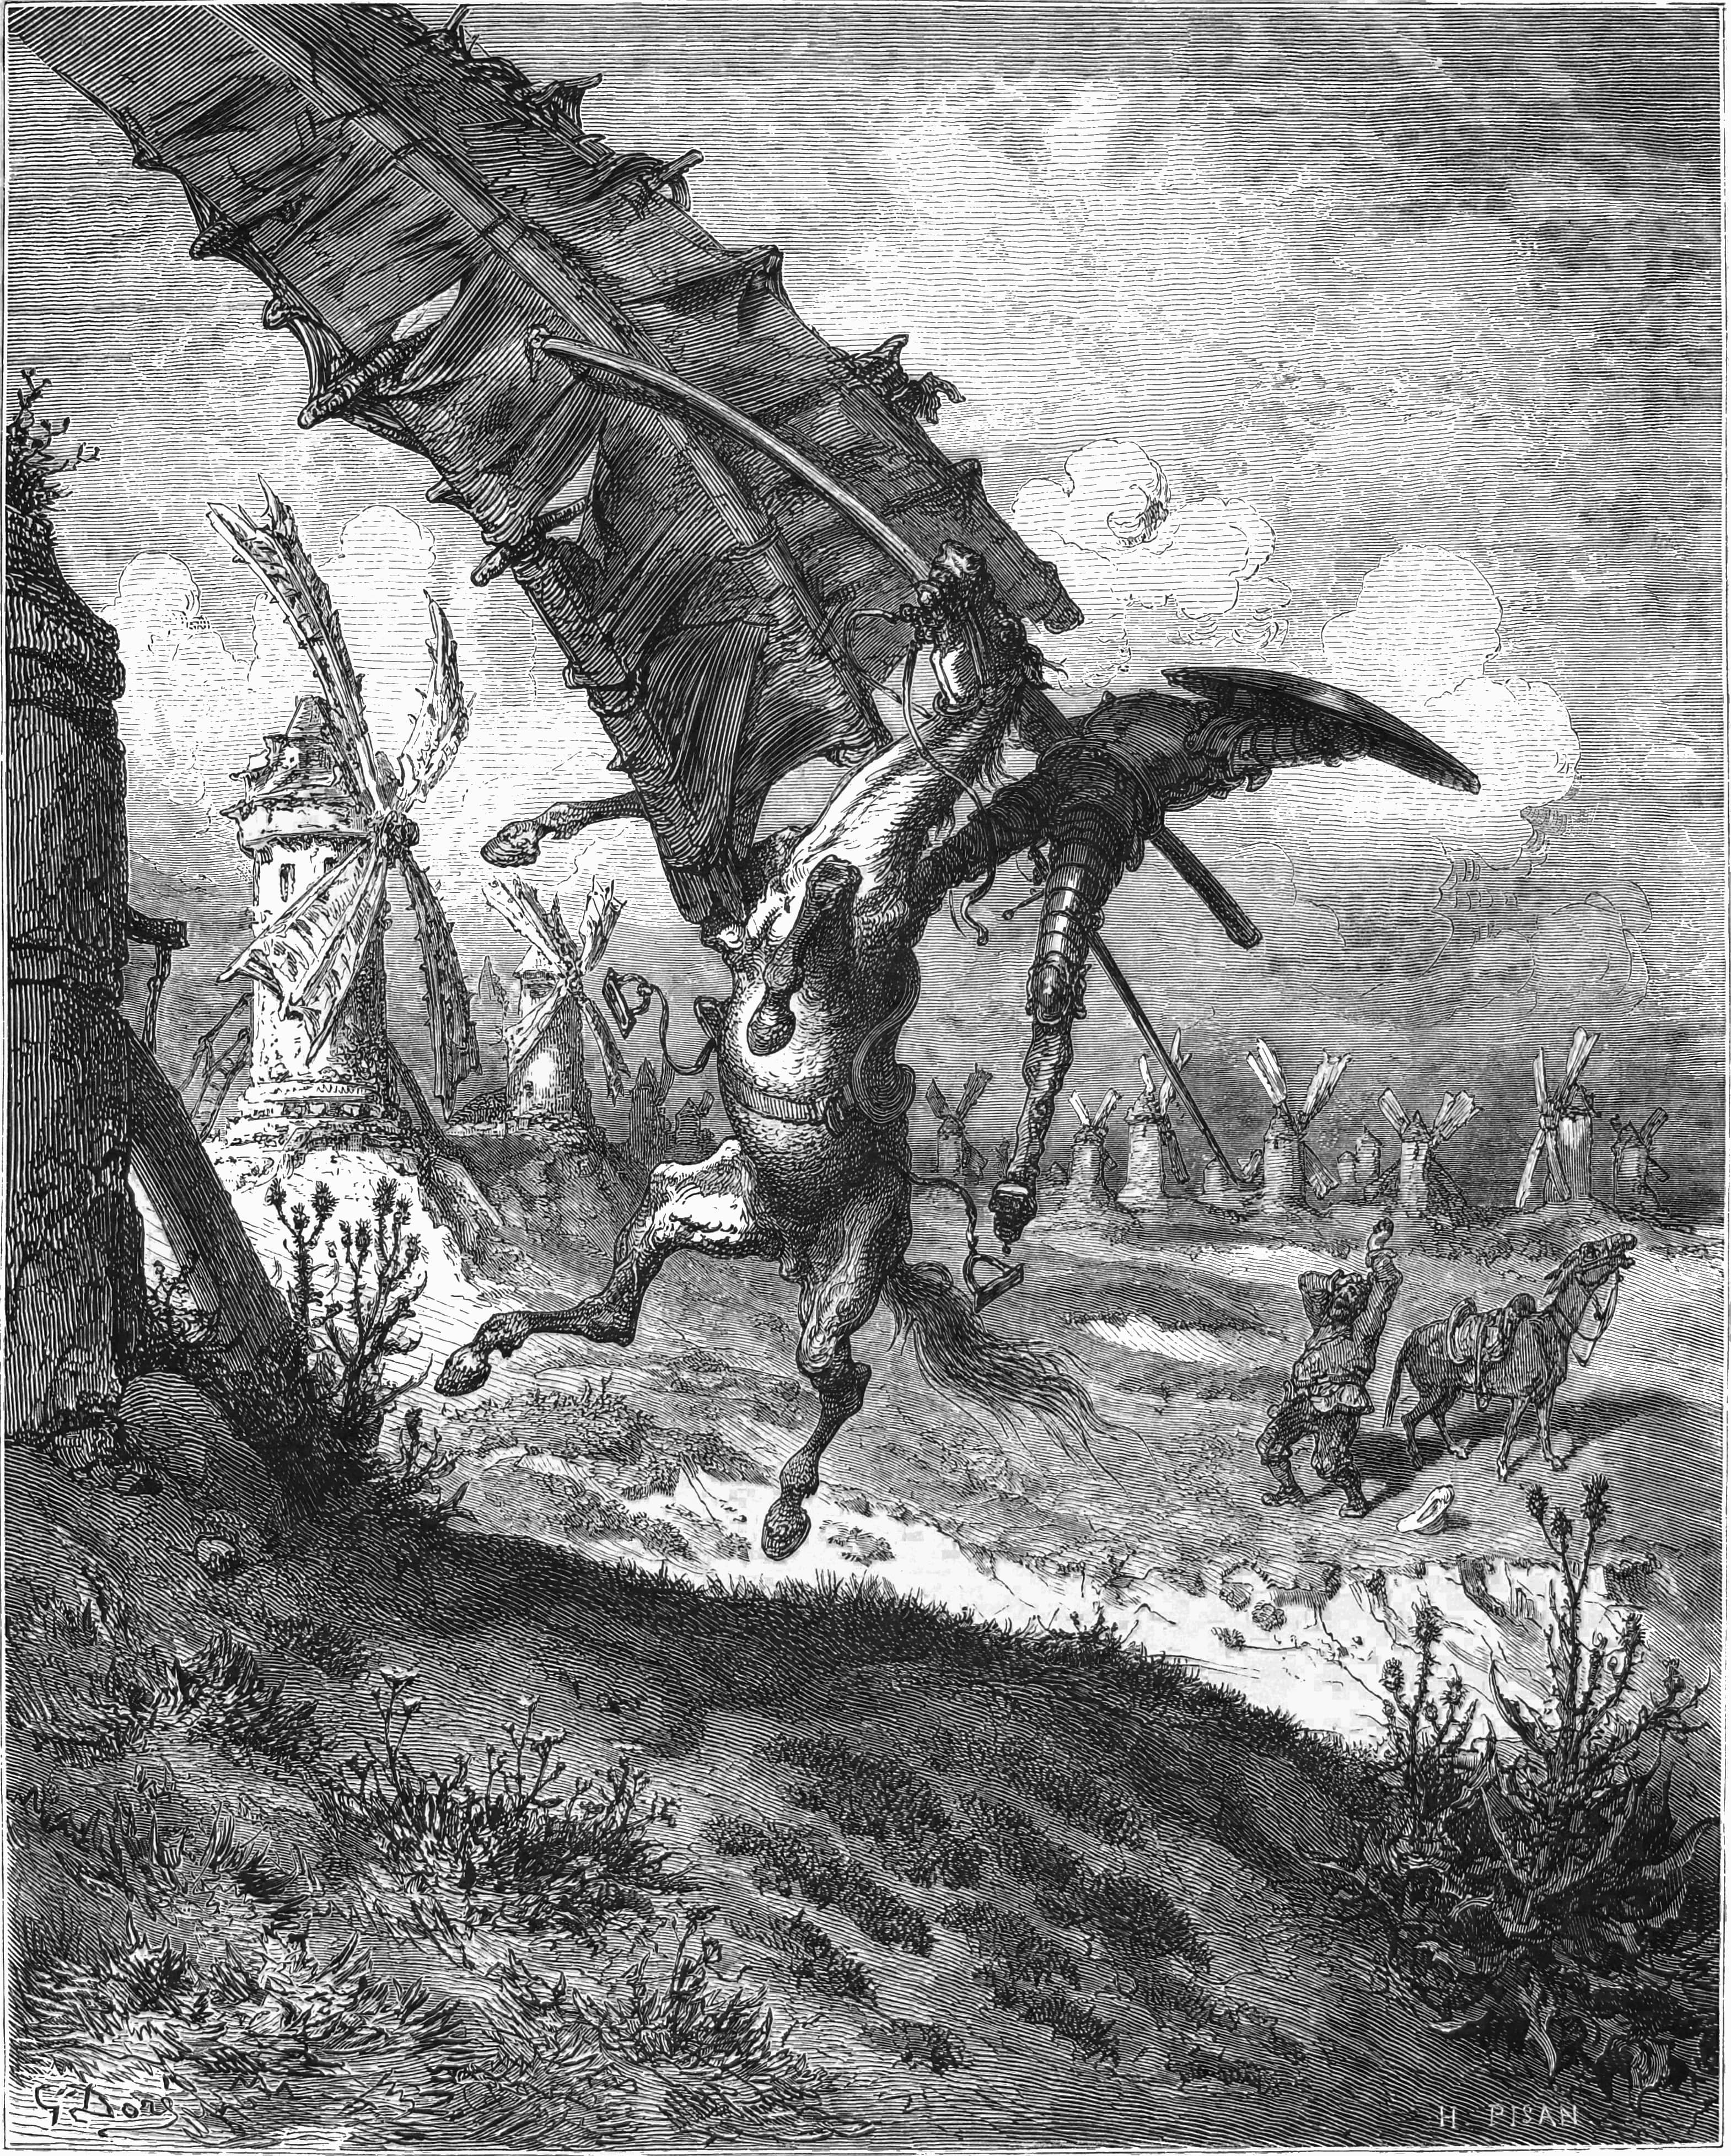 En illustration af den franske kunstner Gustave Doré (1832-1883) fra januar 1863. Her ser vi den sindrige ridder i kamp med, hvad han tror er kæmper, men som viser sig at være gigantiske vindmøller. Sceneriet er blandt de mest ikoniske fra romanen.